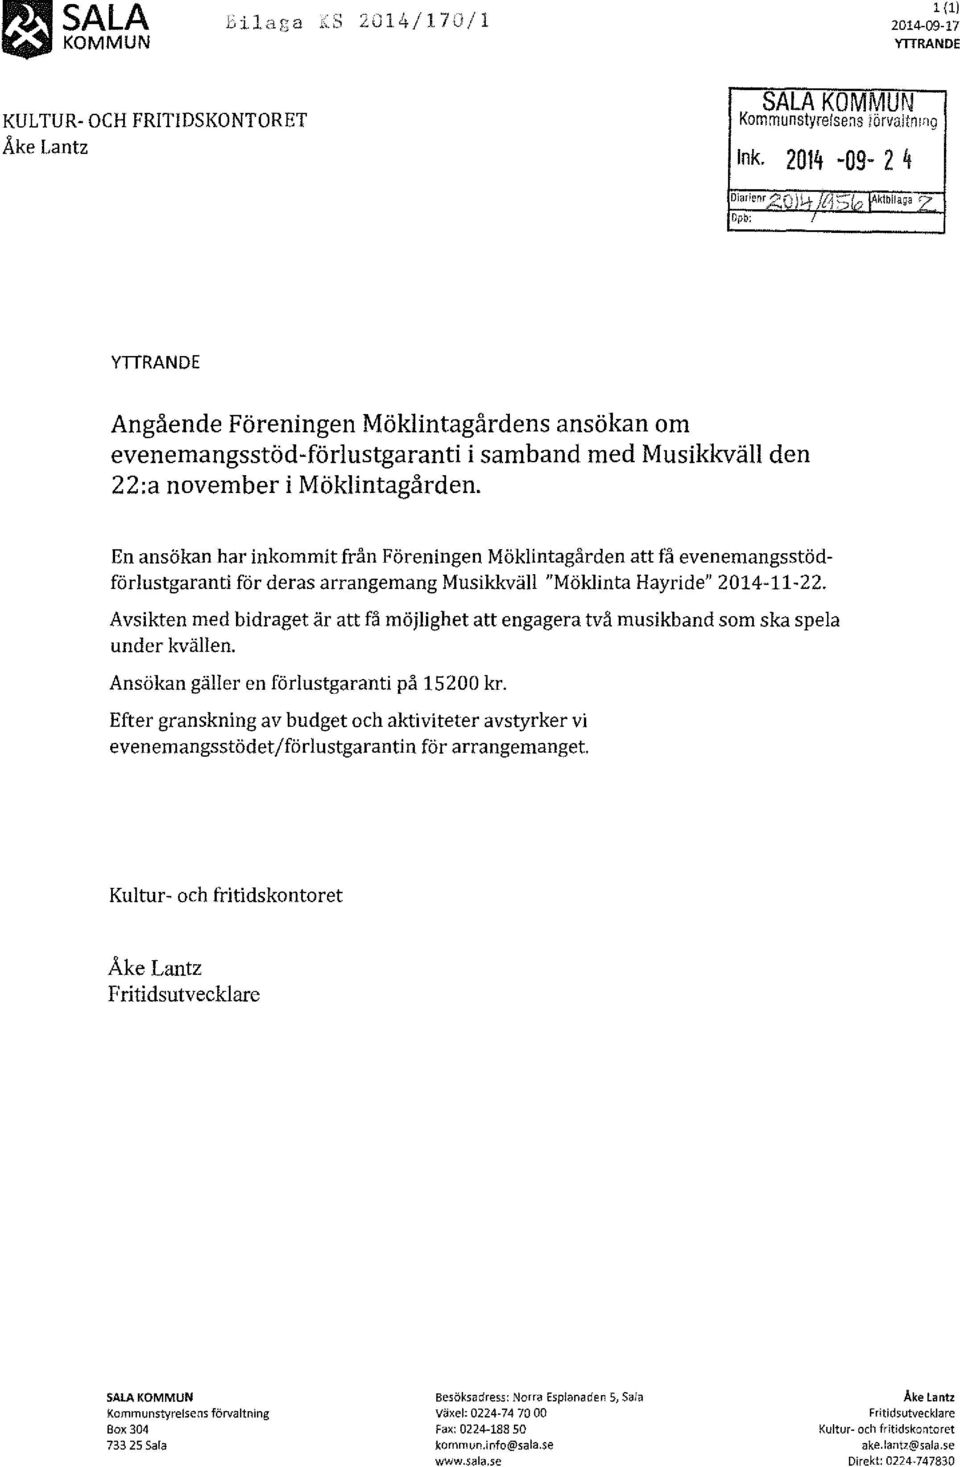 En ansökan har inkommit från Föreningen Möklintagården att få evenemangsstödförlustgaranti för deras arrangemang Musikkväll "Möklinta Hayride" 2014-11-22.